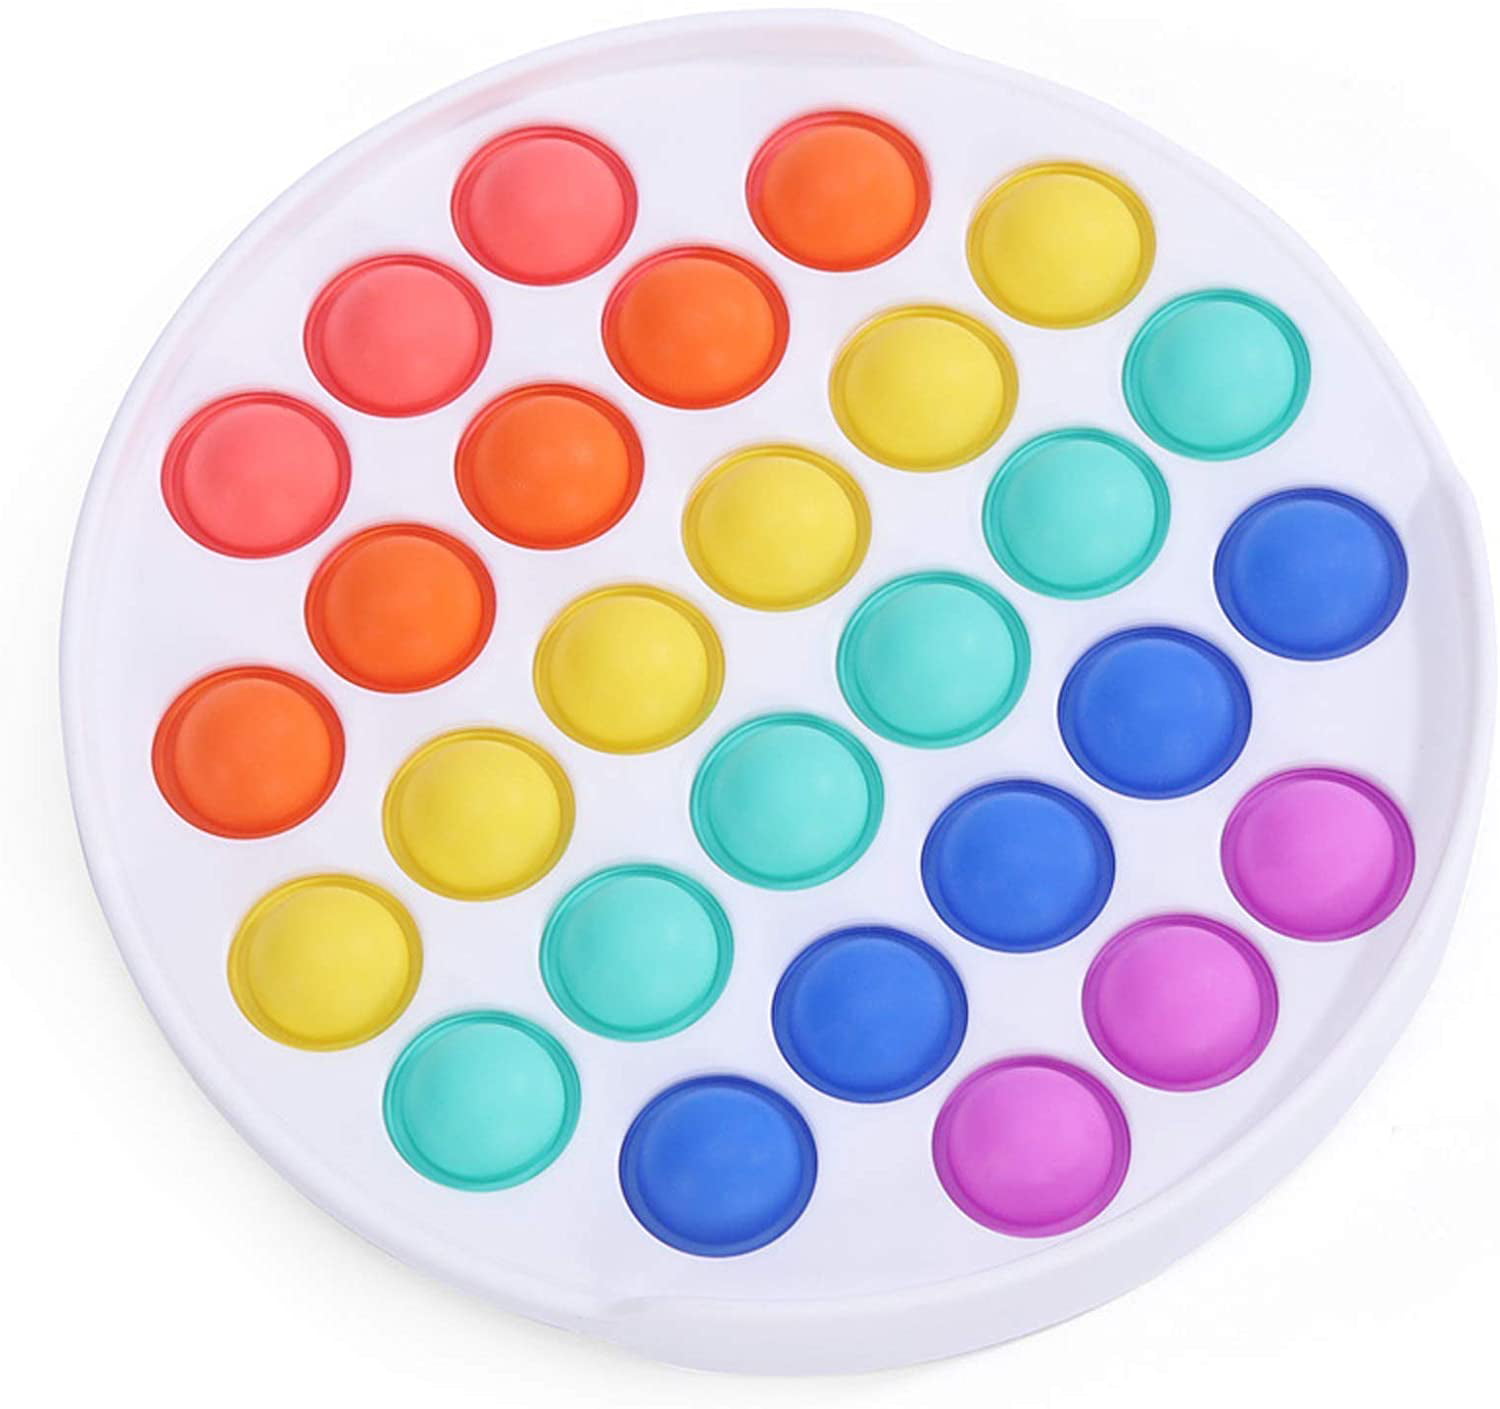 Details about   Popit Fidget Toy Antistress For Adult Autism Children Push Bubble Fidget Sensor 